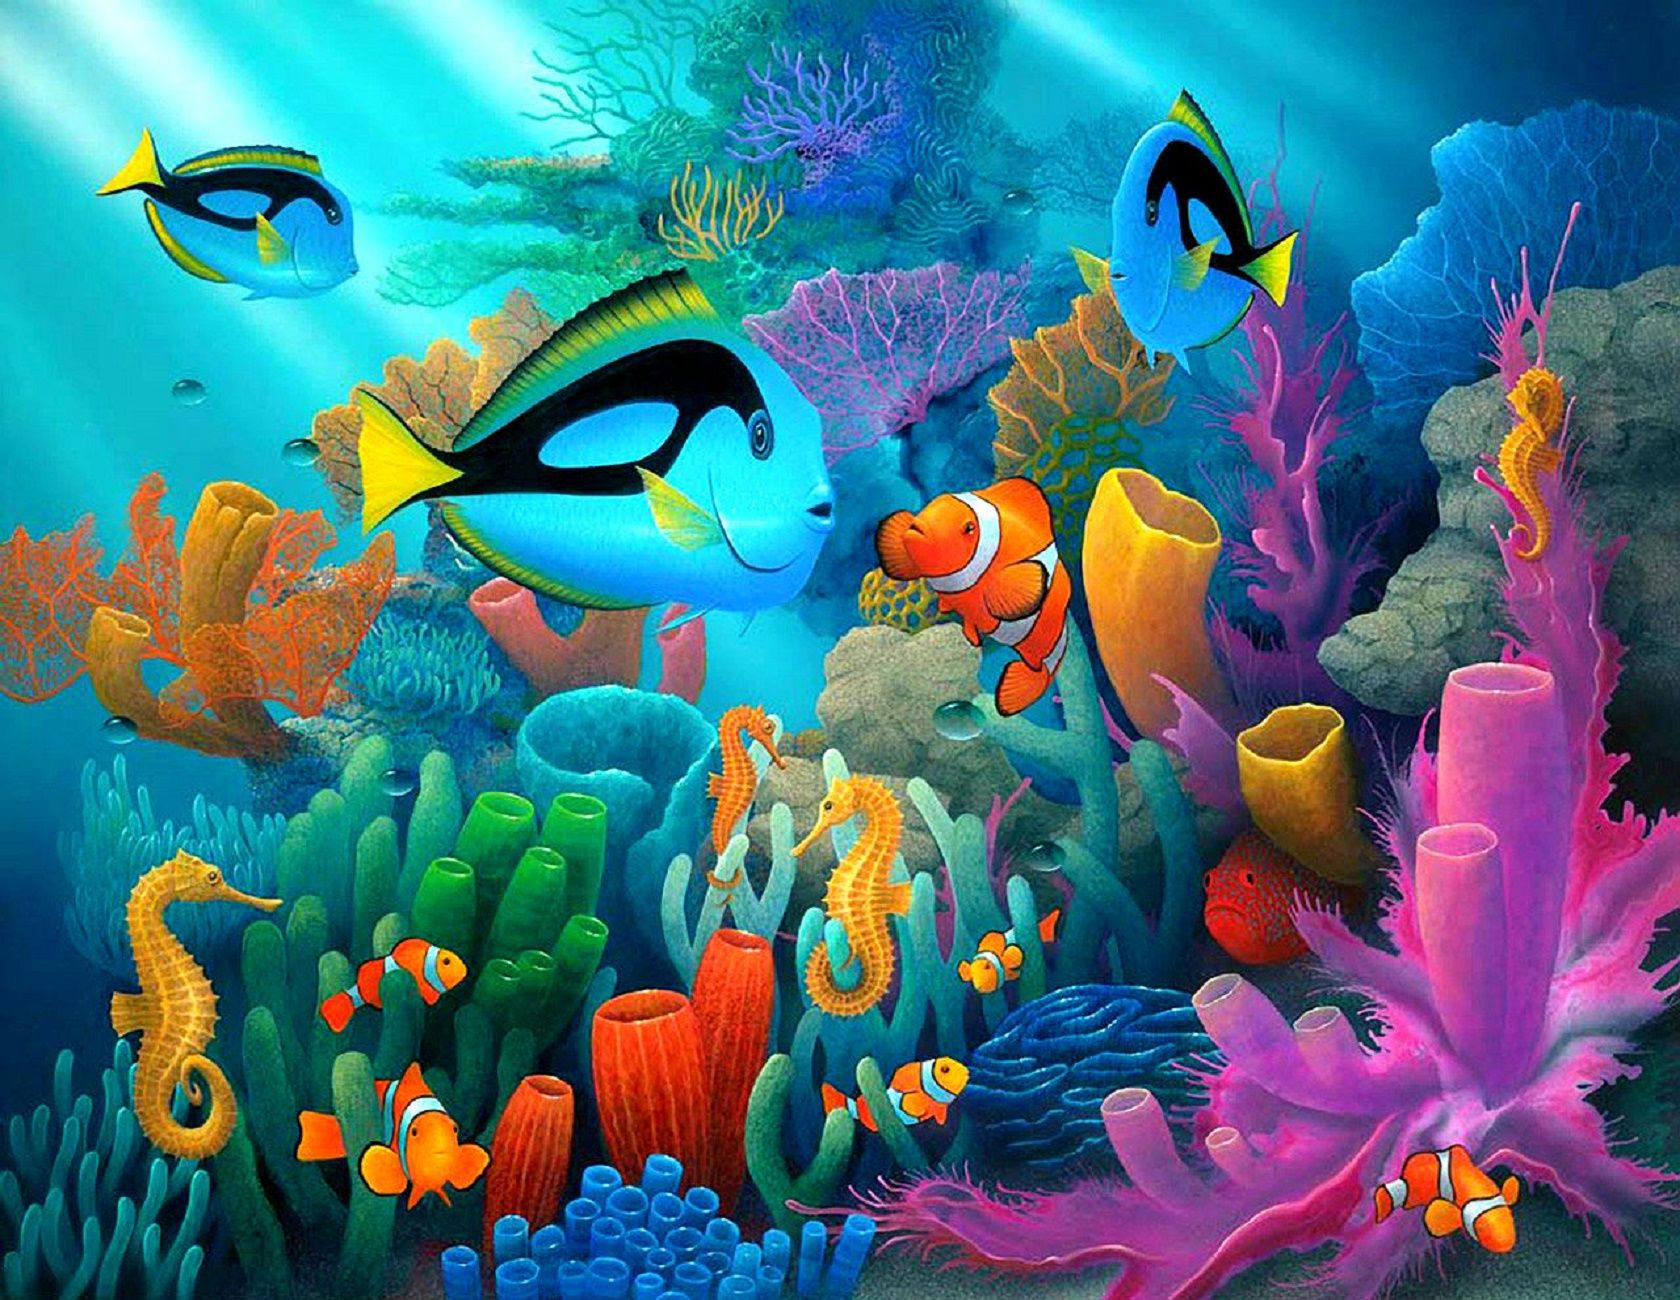 دنیای زیر آب (underwater)